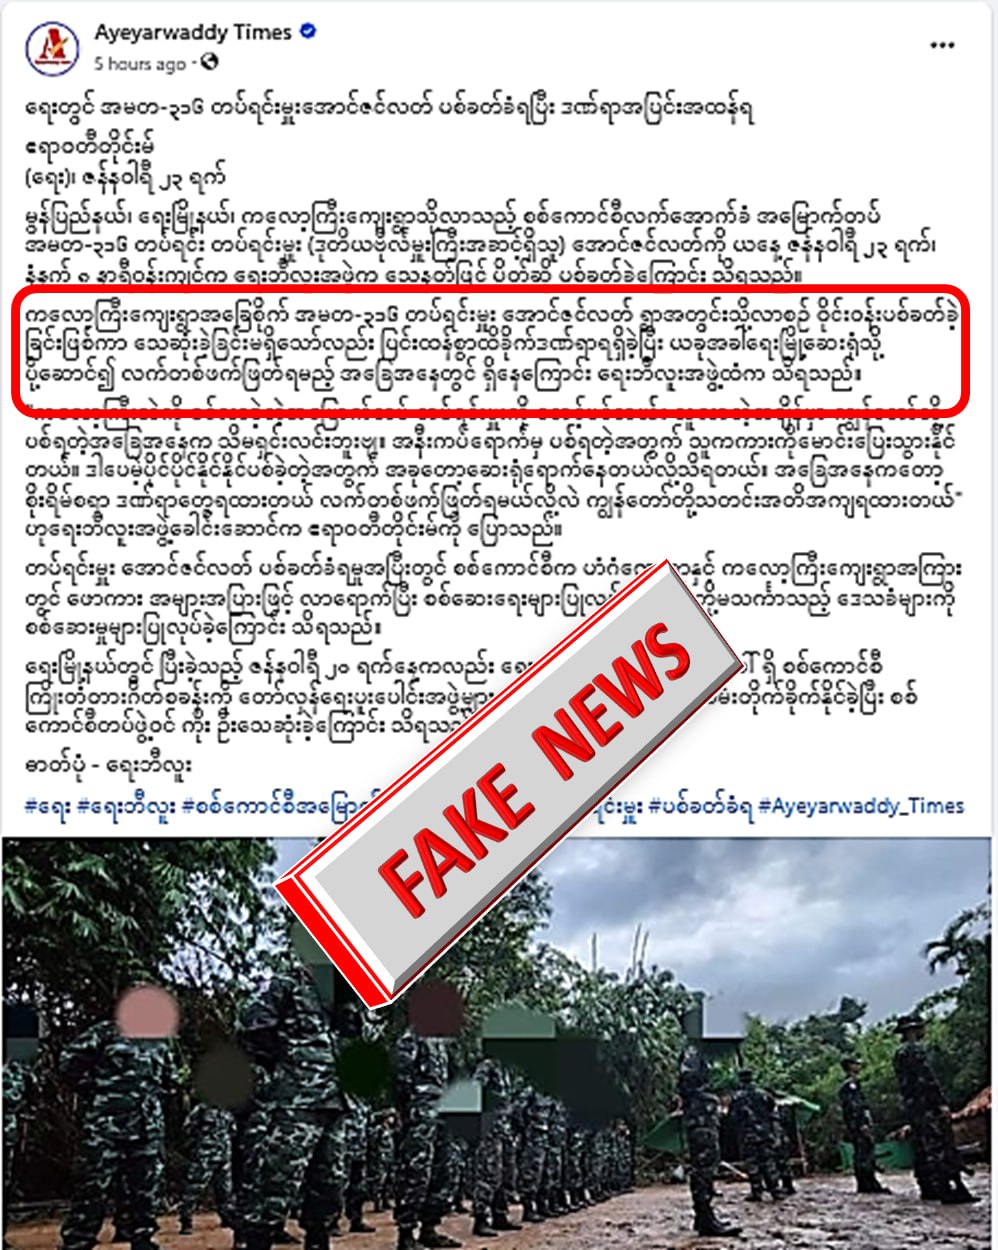 အမတ(၃၁၆)တပ်ရင်းမှူး ပစ်ခတ်ခံရတယ်လို့ Ayeyarwaddy Times မှ သတင်းအတုရေး